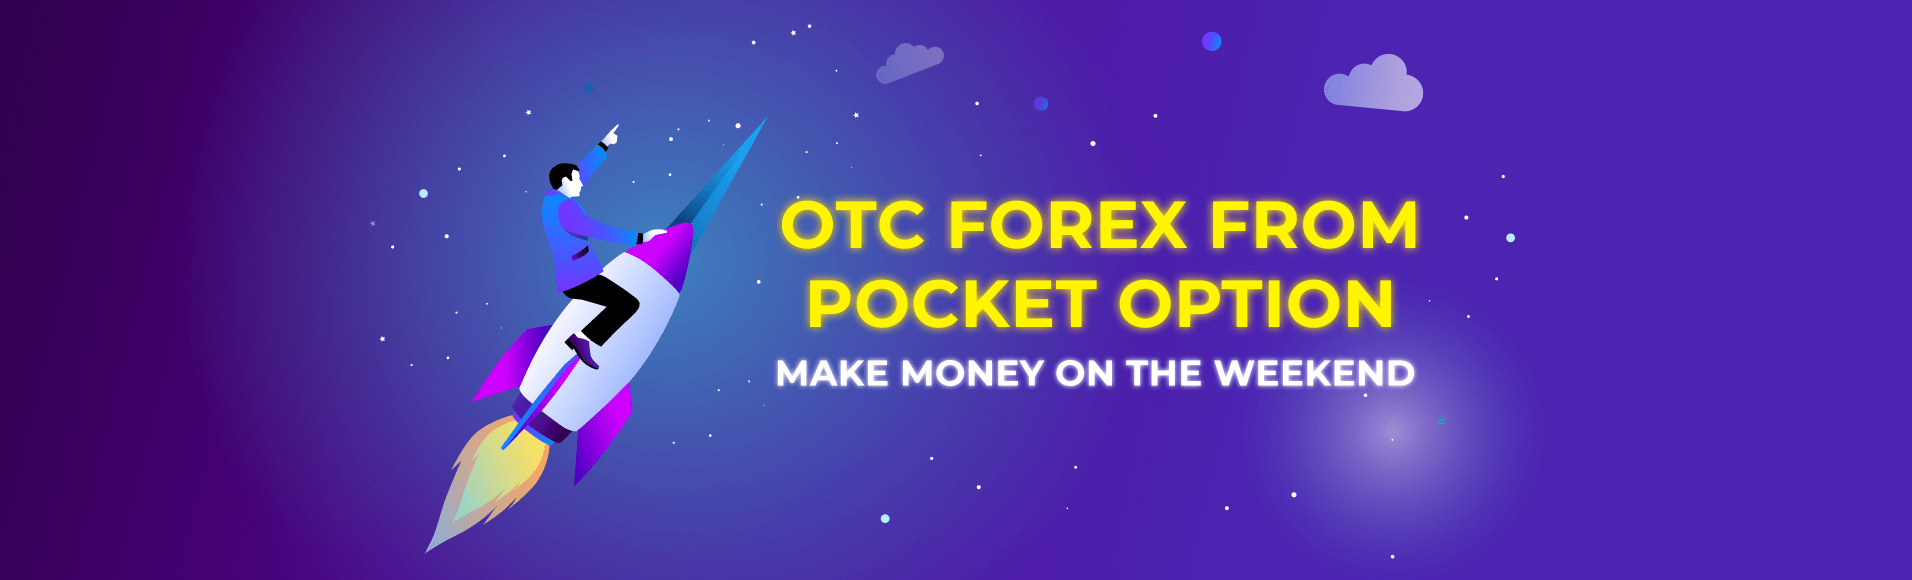 OTC Forex de Pocket Option - gagner de argent le week-end